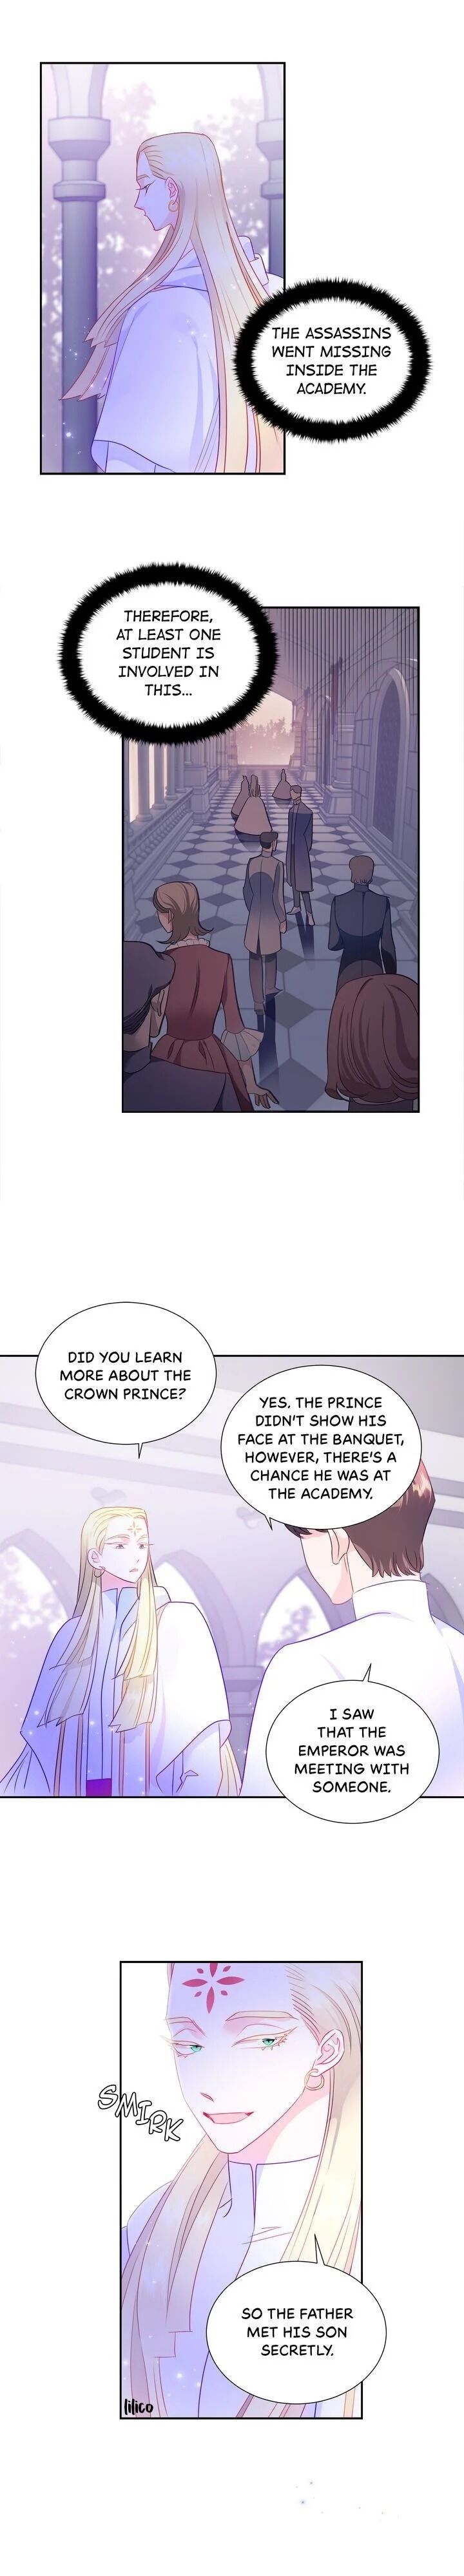 The Princess' Spaceship - Page 3